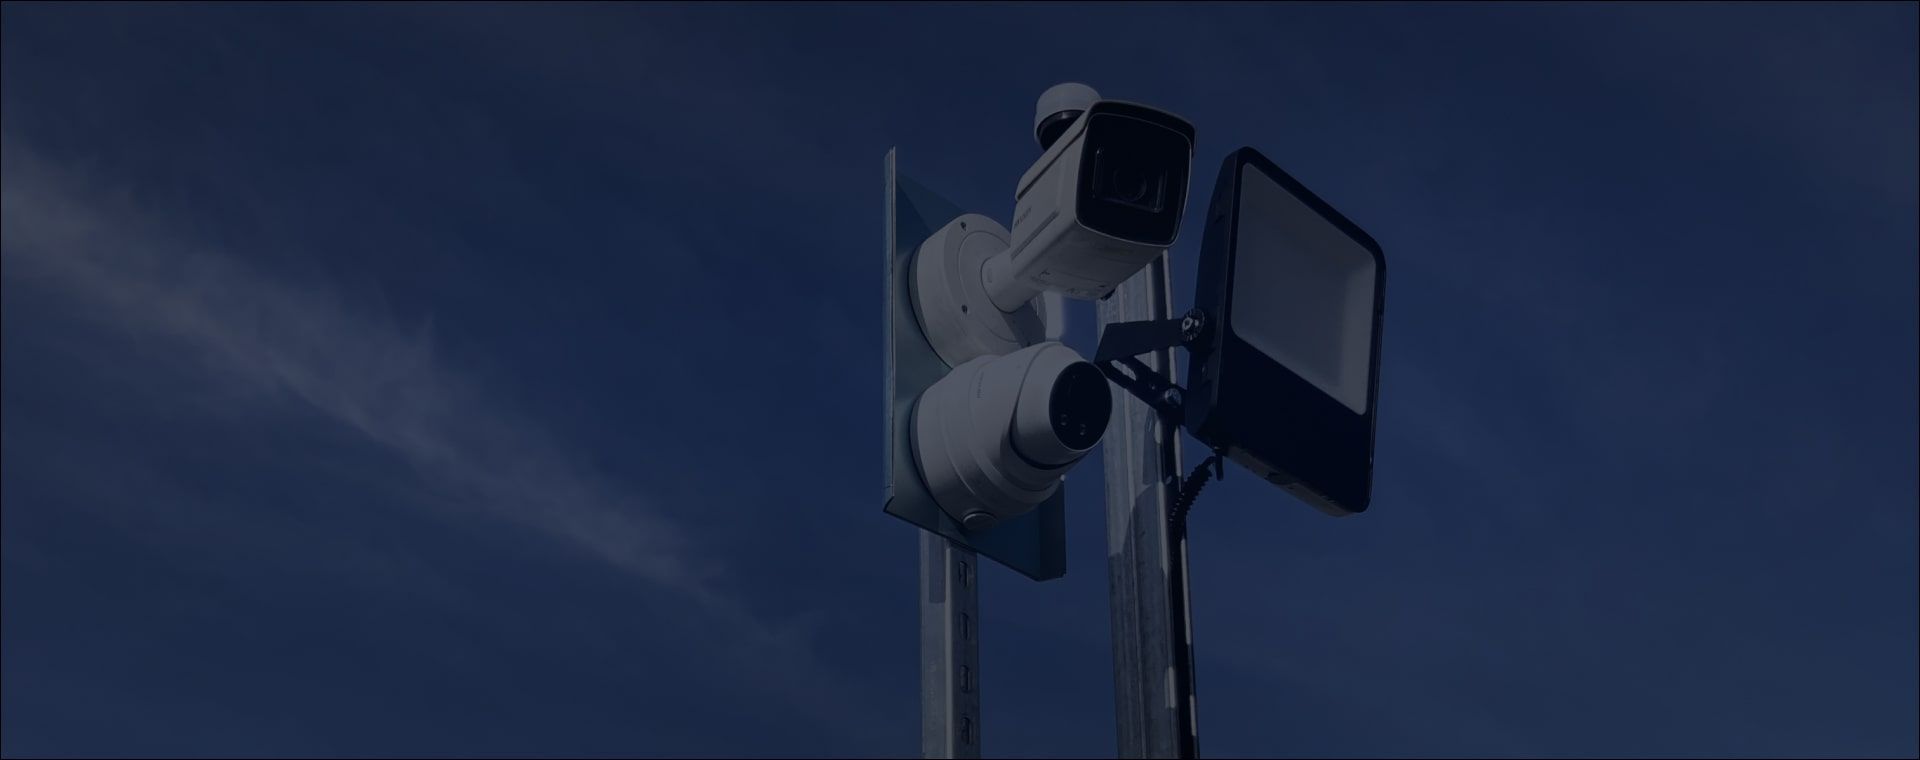 Security Lights Belfast | Security Lighting Systems | Security Light Installation | Security Light Installers